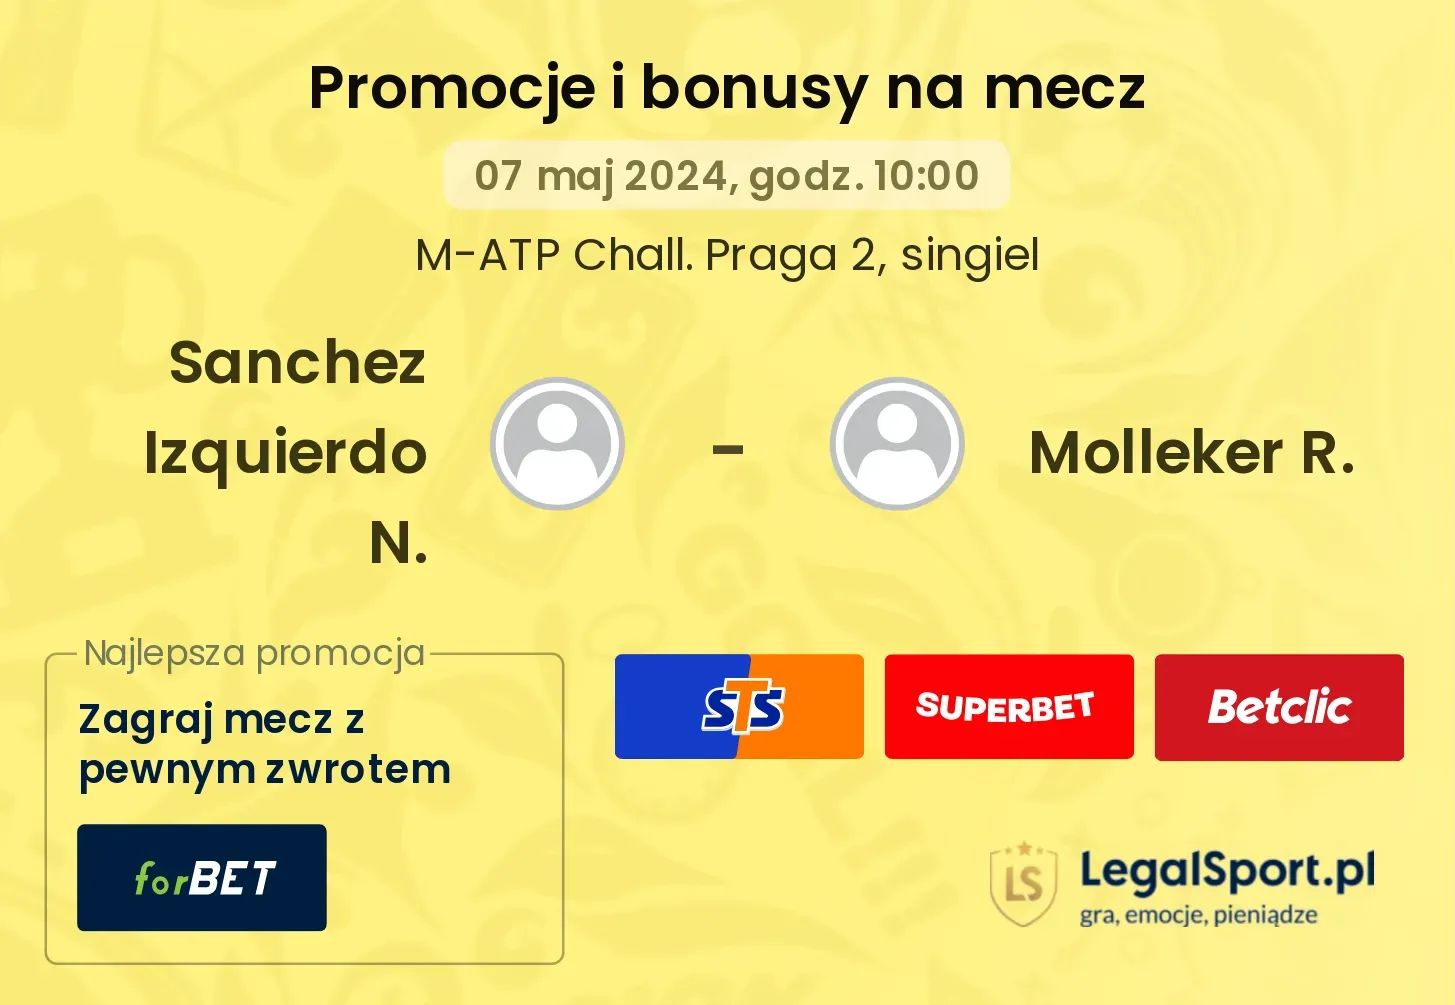 Sanchez Izquierdo N. - Molleker R. promocje bonusy na mecz